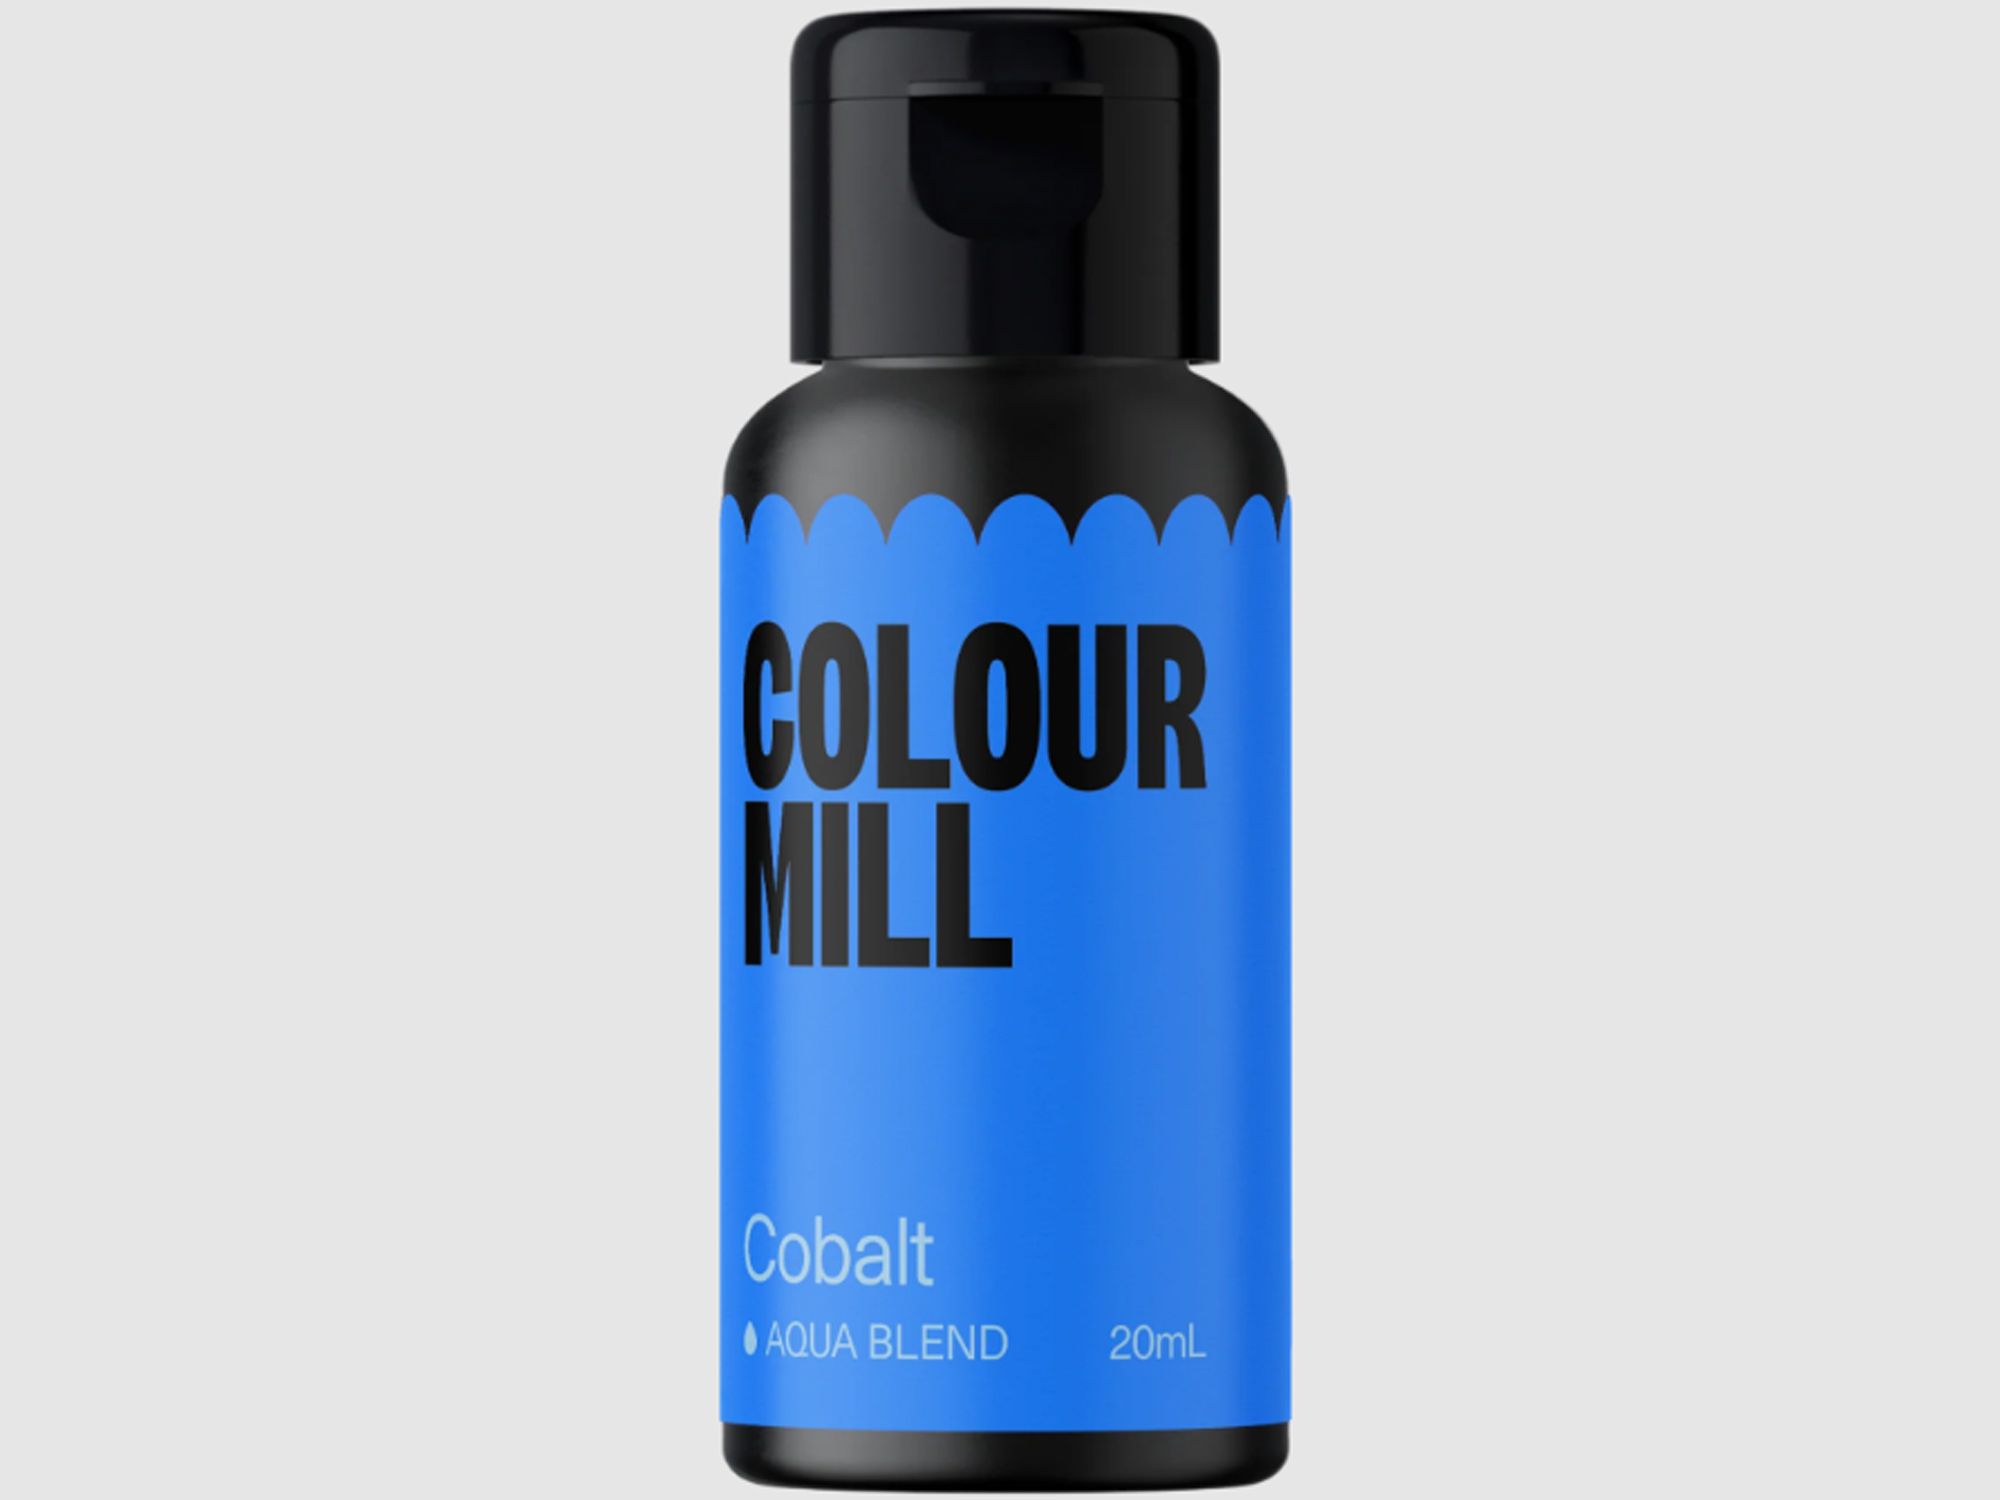 Colour Mill Cobalt (Aqua Blend) 20ml